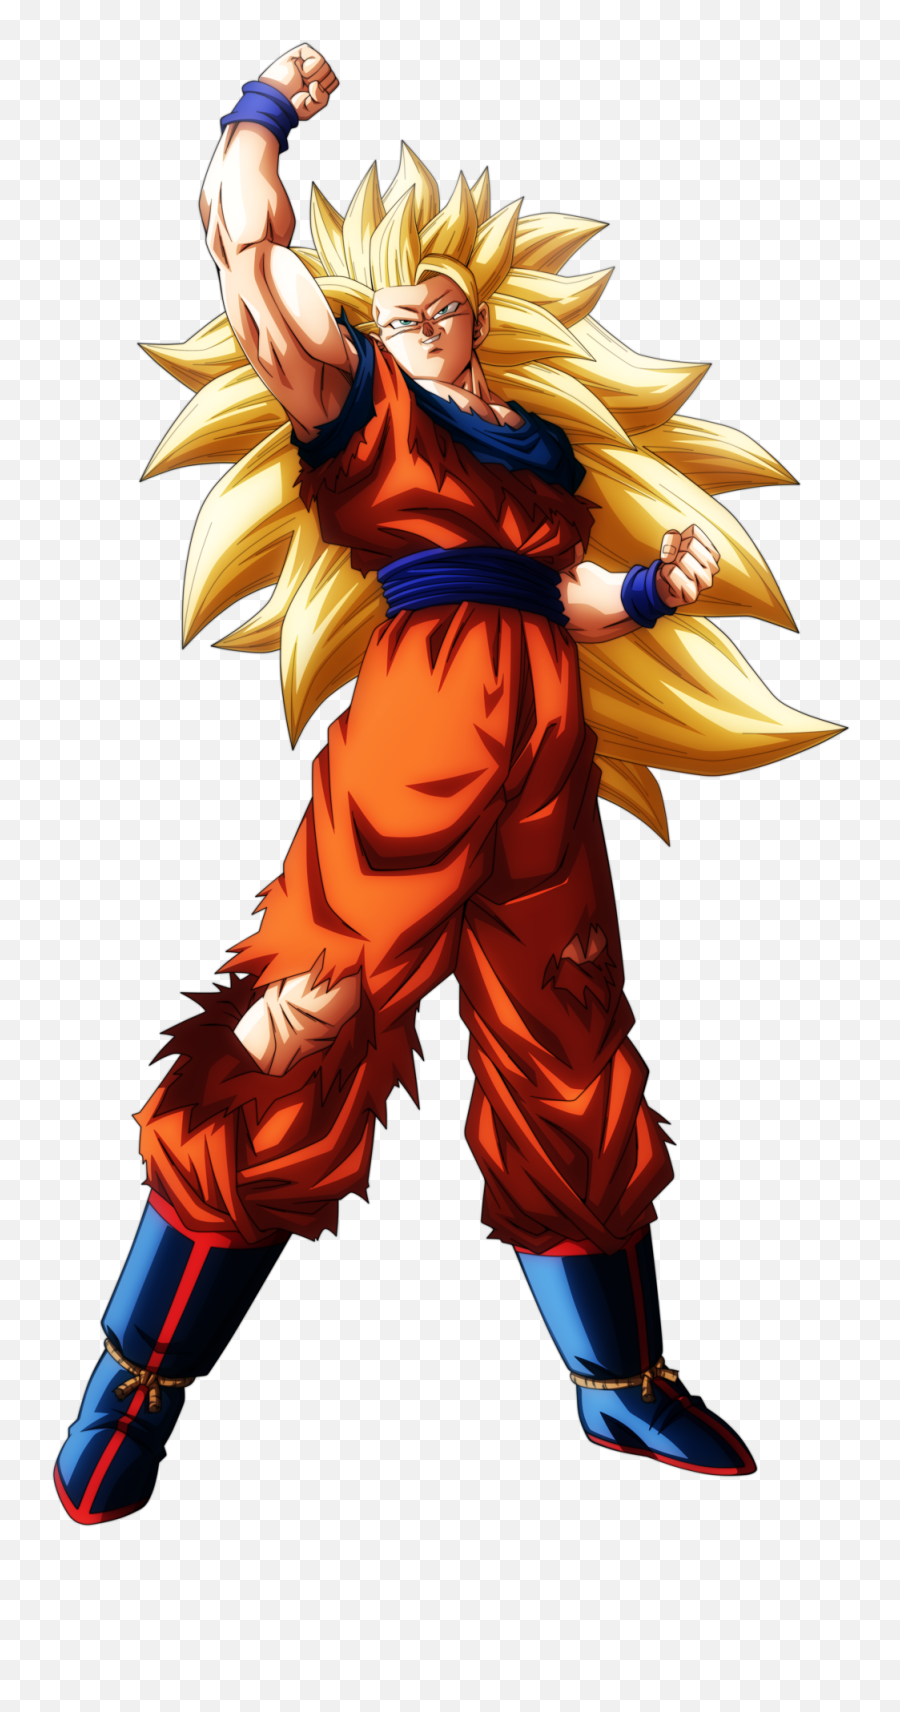 Download Ultra Instinct - Goku Ultra Instinct Render Png Goku Super Saiyan 3 Emoji,Goku Hair Png